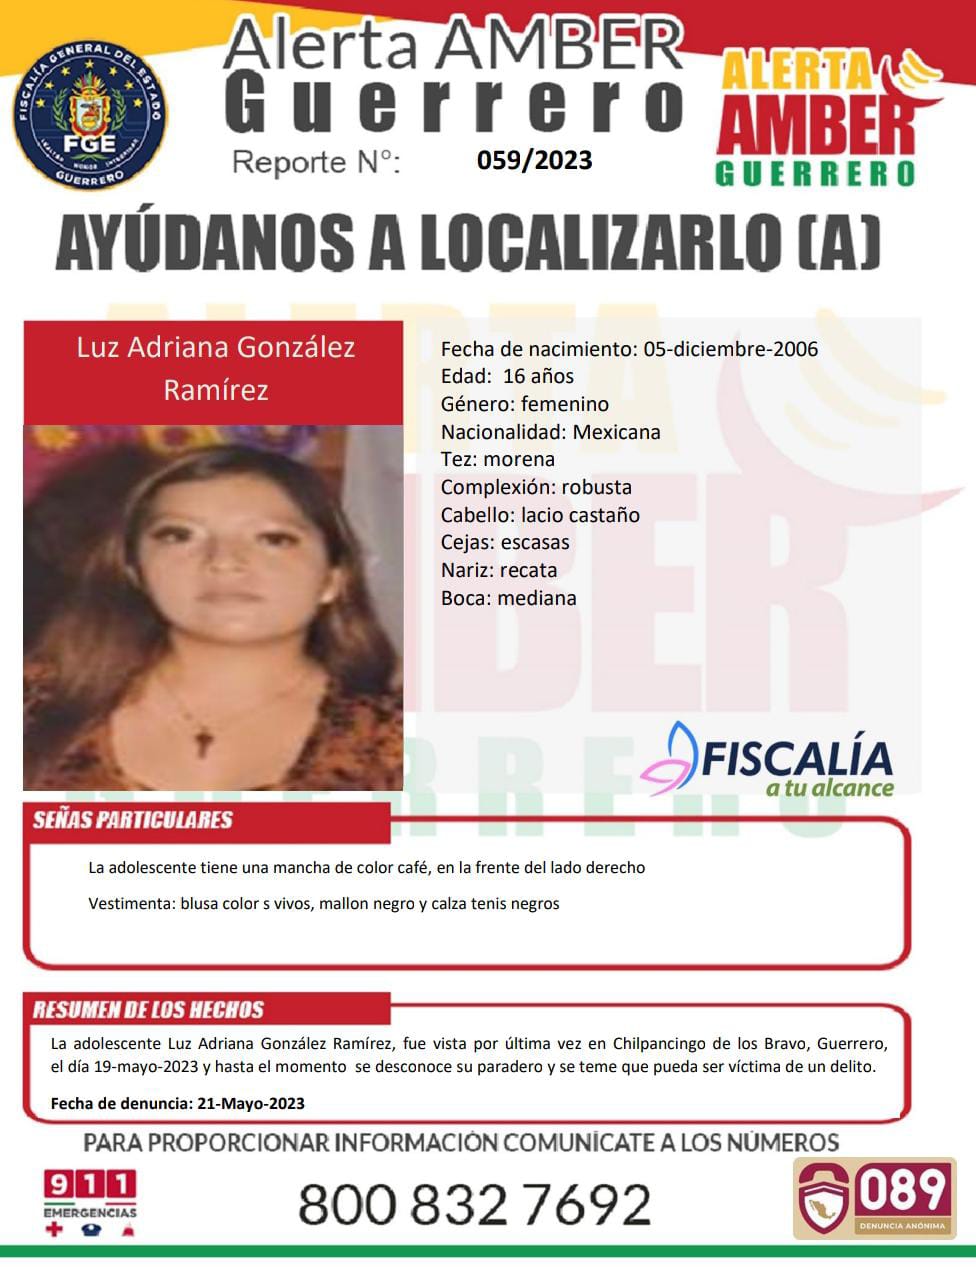 Fiscalía General Del Estado Solicita Su Colaboración Para Localizar A Luz Adriana González Ramírez.